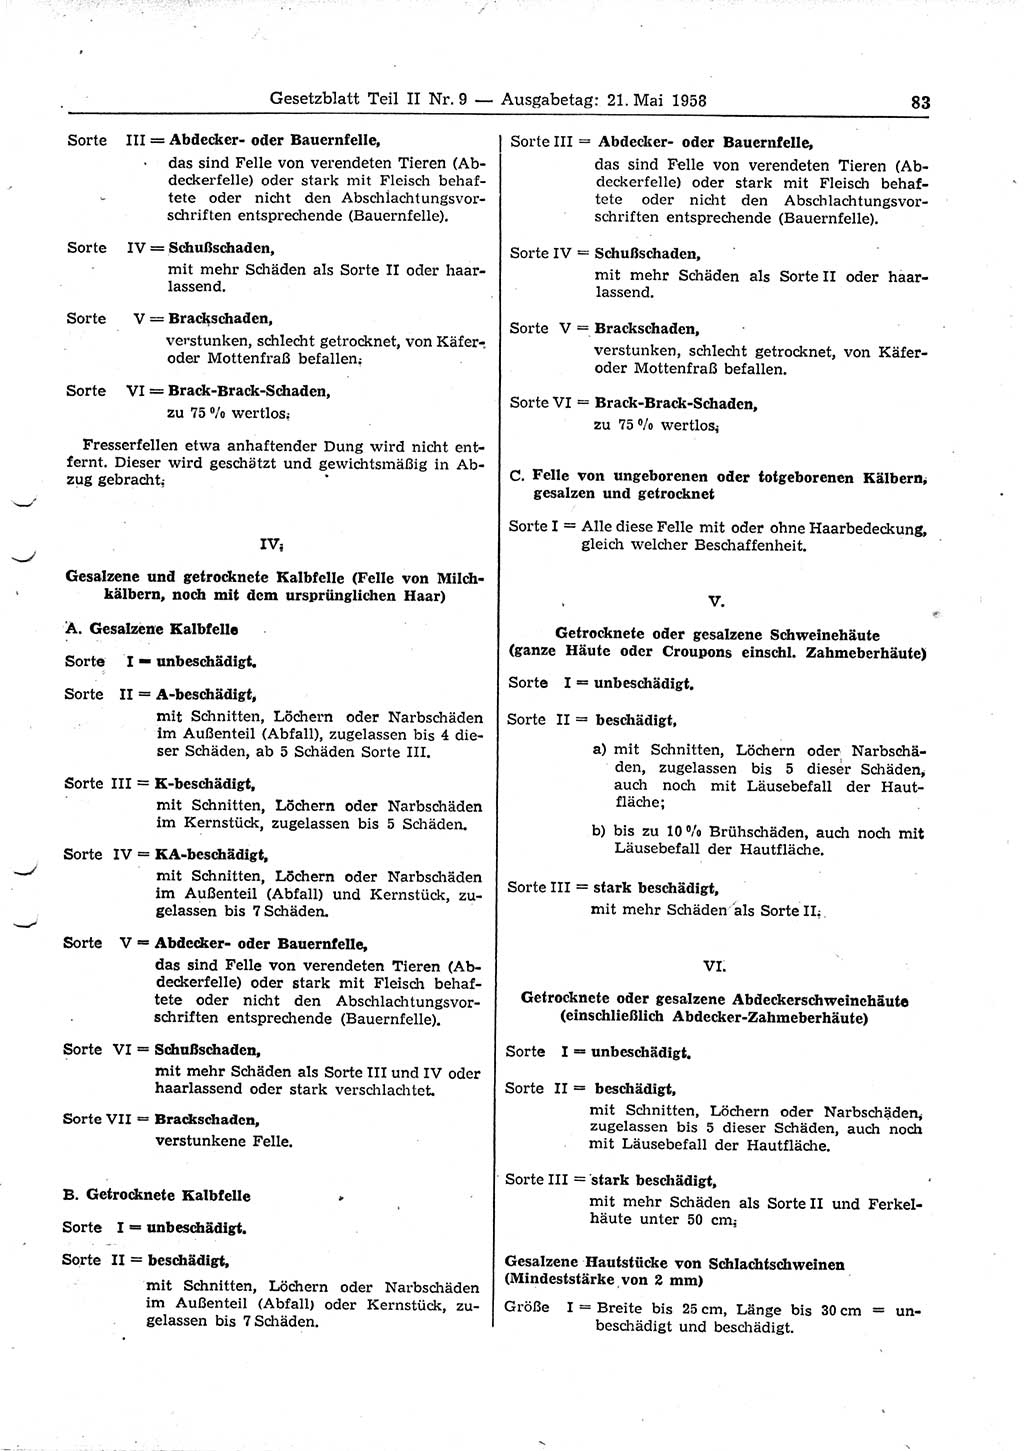 Gesetzblatt (GBl.) der Deutschen Demokratischen Republik (DDR) Teil ⅠⅠ 1958, Seite 83 (GBl. DDR ⅠⅠ 1958, S. 83)